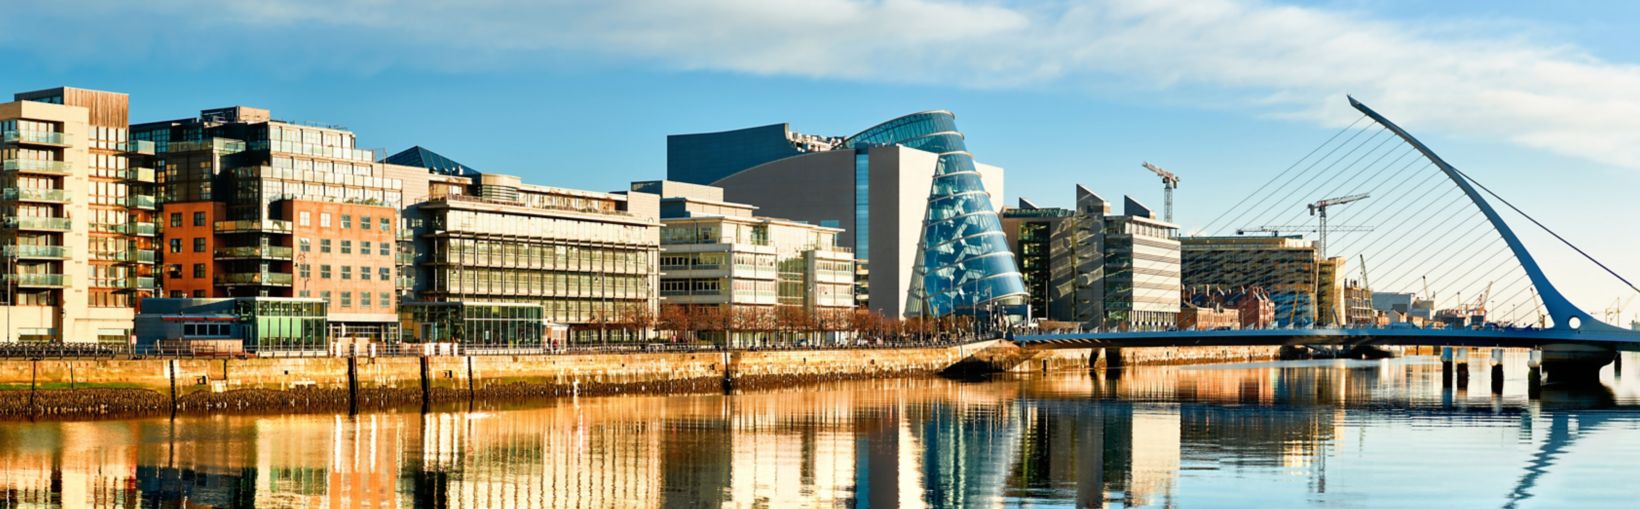 Modernos edificios y oficinas en el río Liffey en Dublín en un día soleado y luminoso, con el puente Harp a la derecha